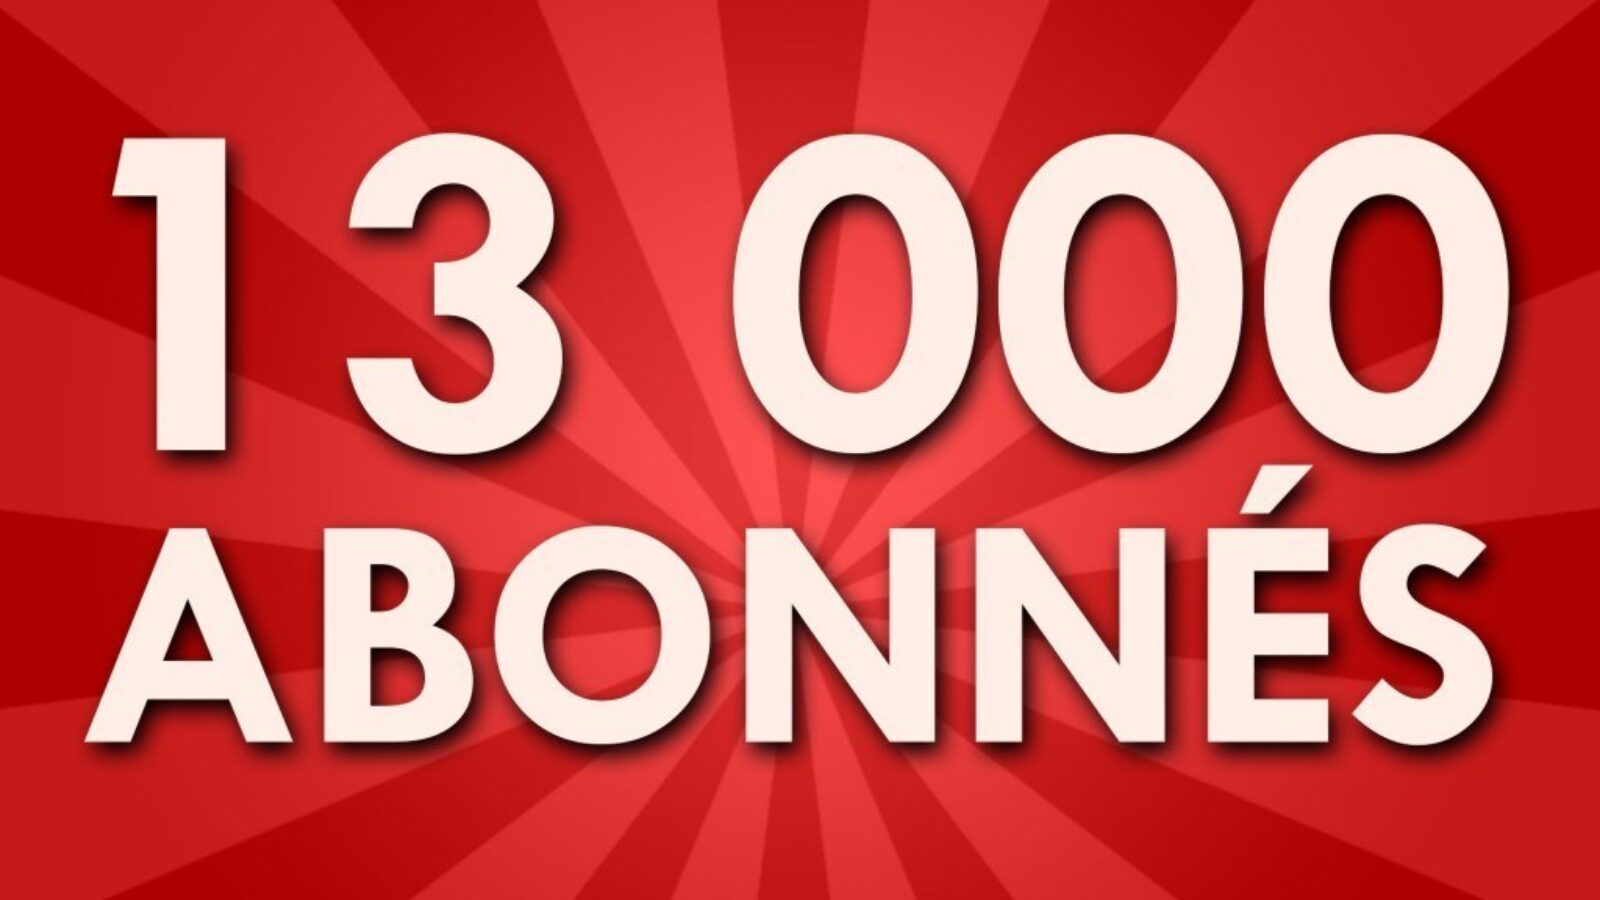 MONCHARLEVOIX.NET toujours en progression ! 13 000 ABONNÉS pour notre page FACEBOOK  ! Merci !